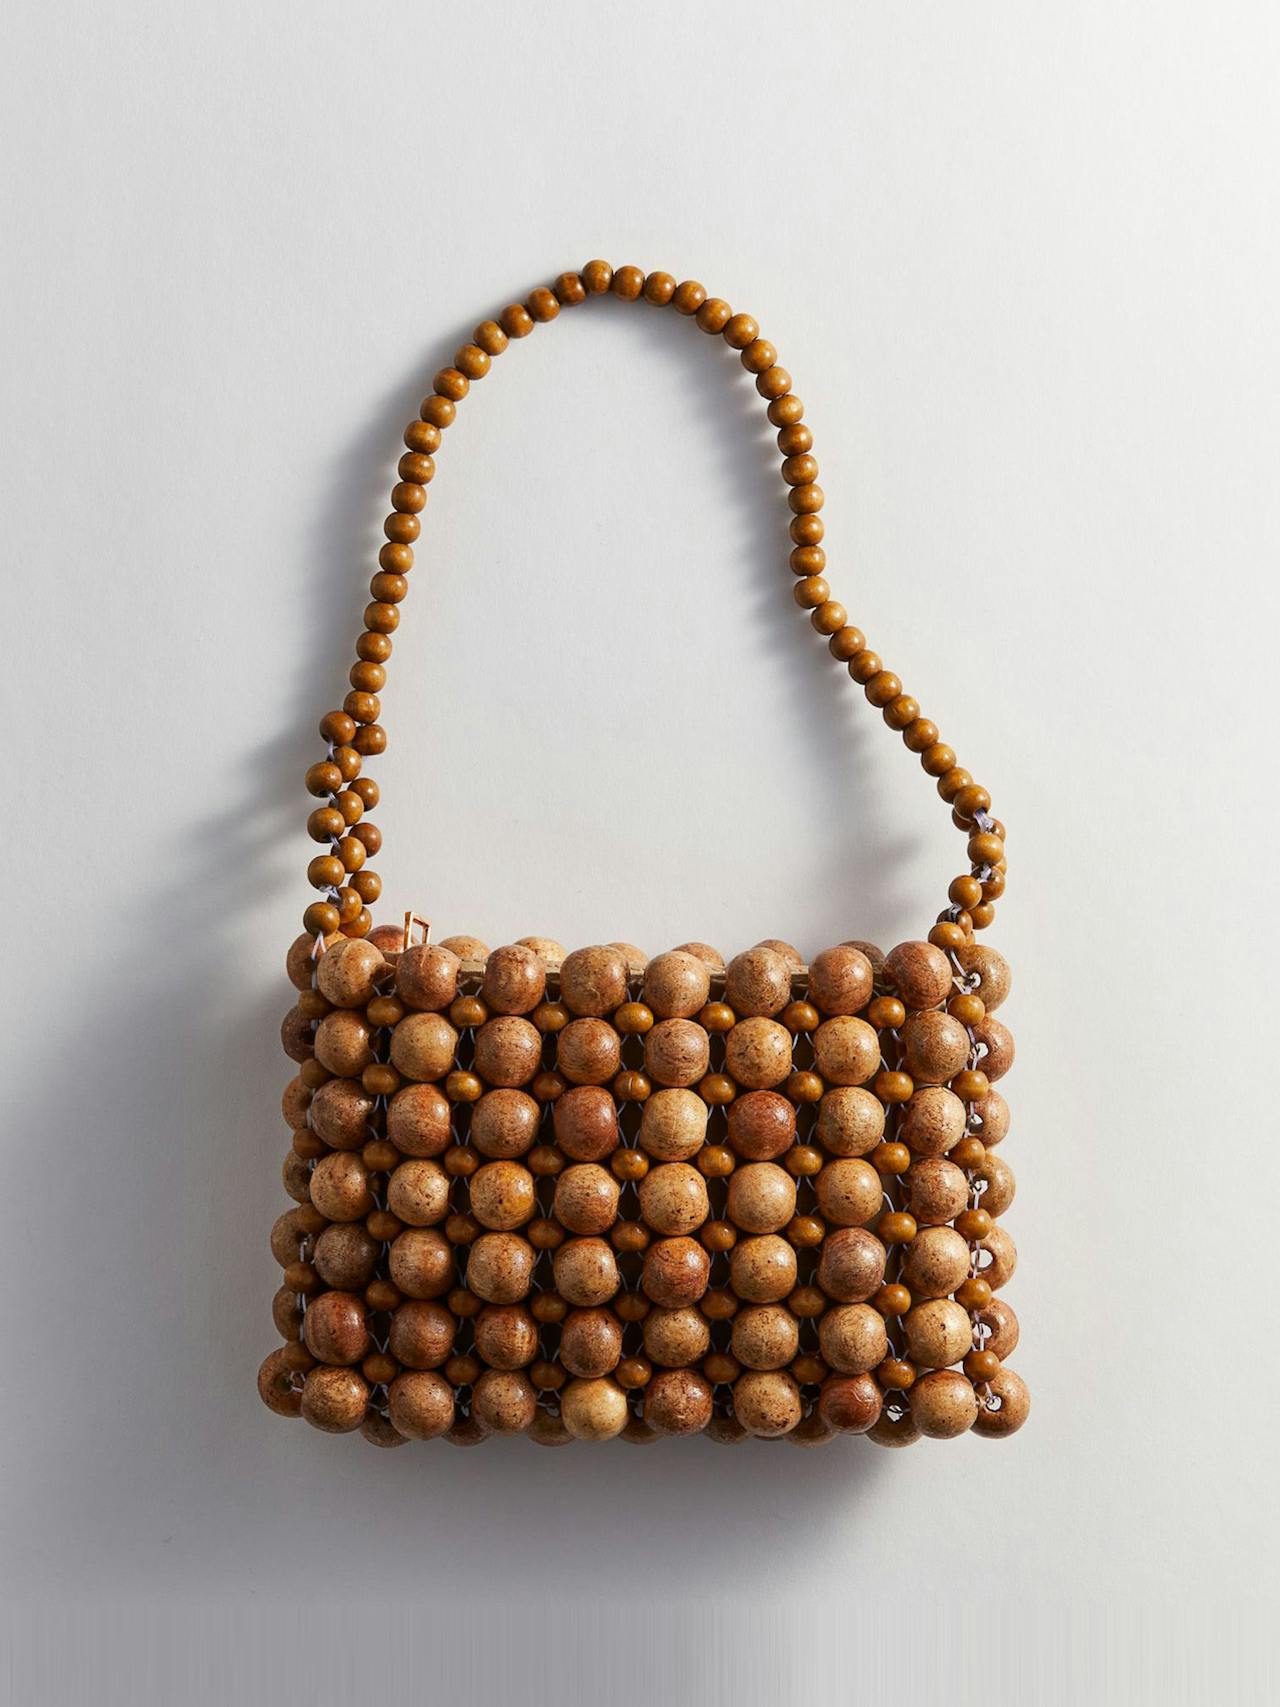 Wooden-bead handbag